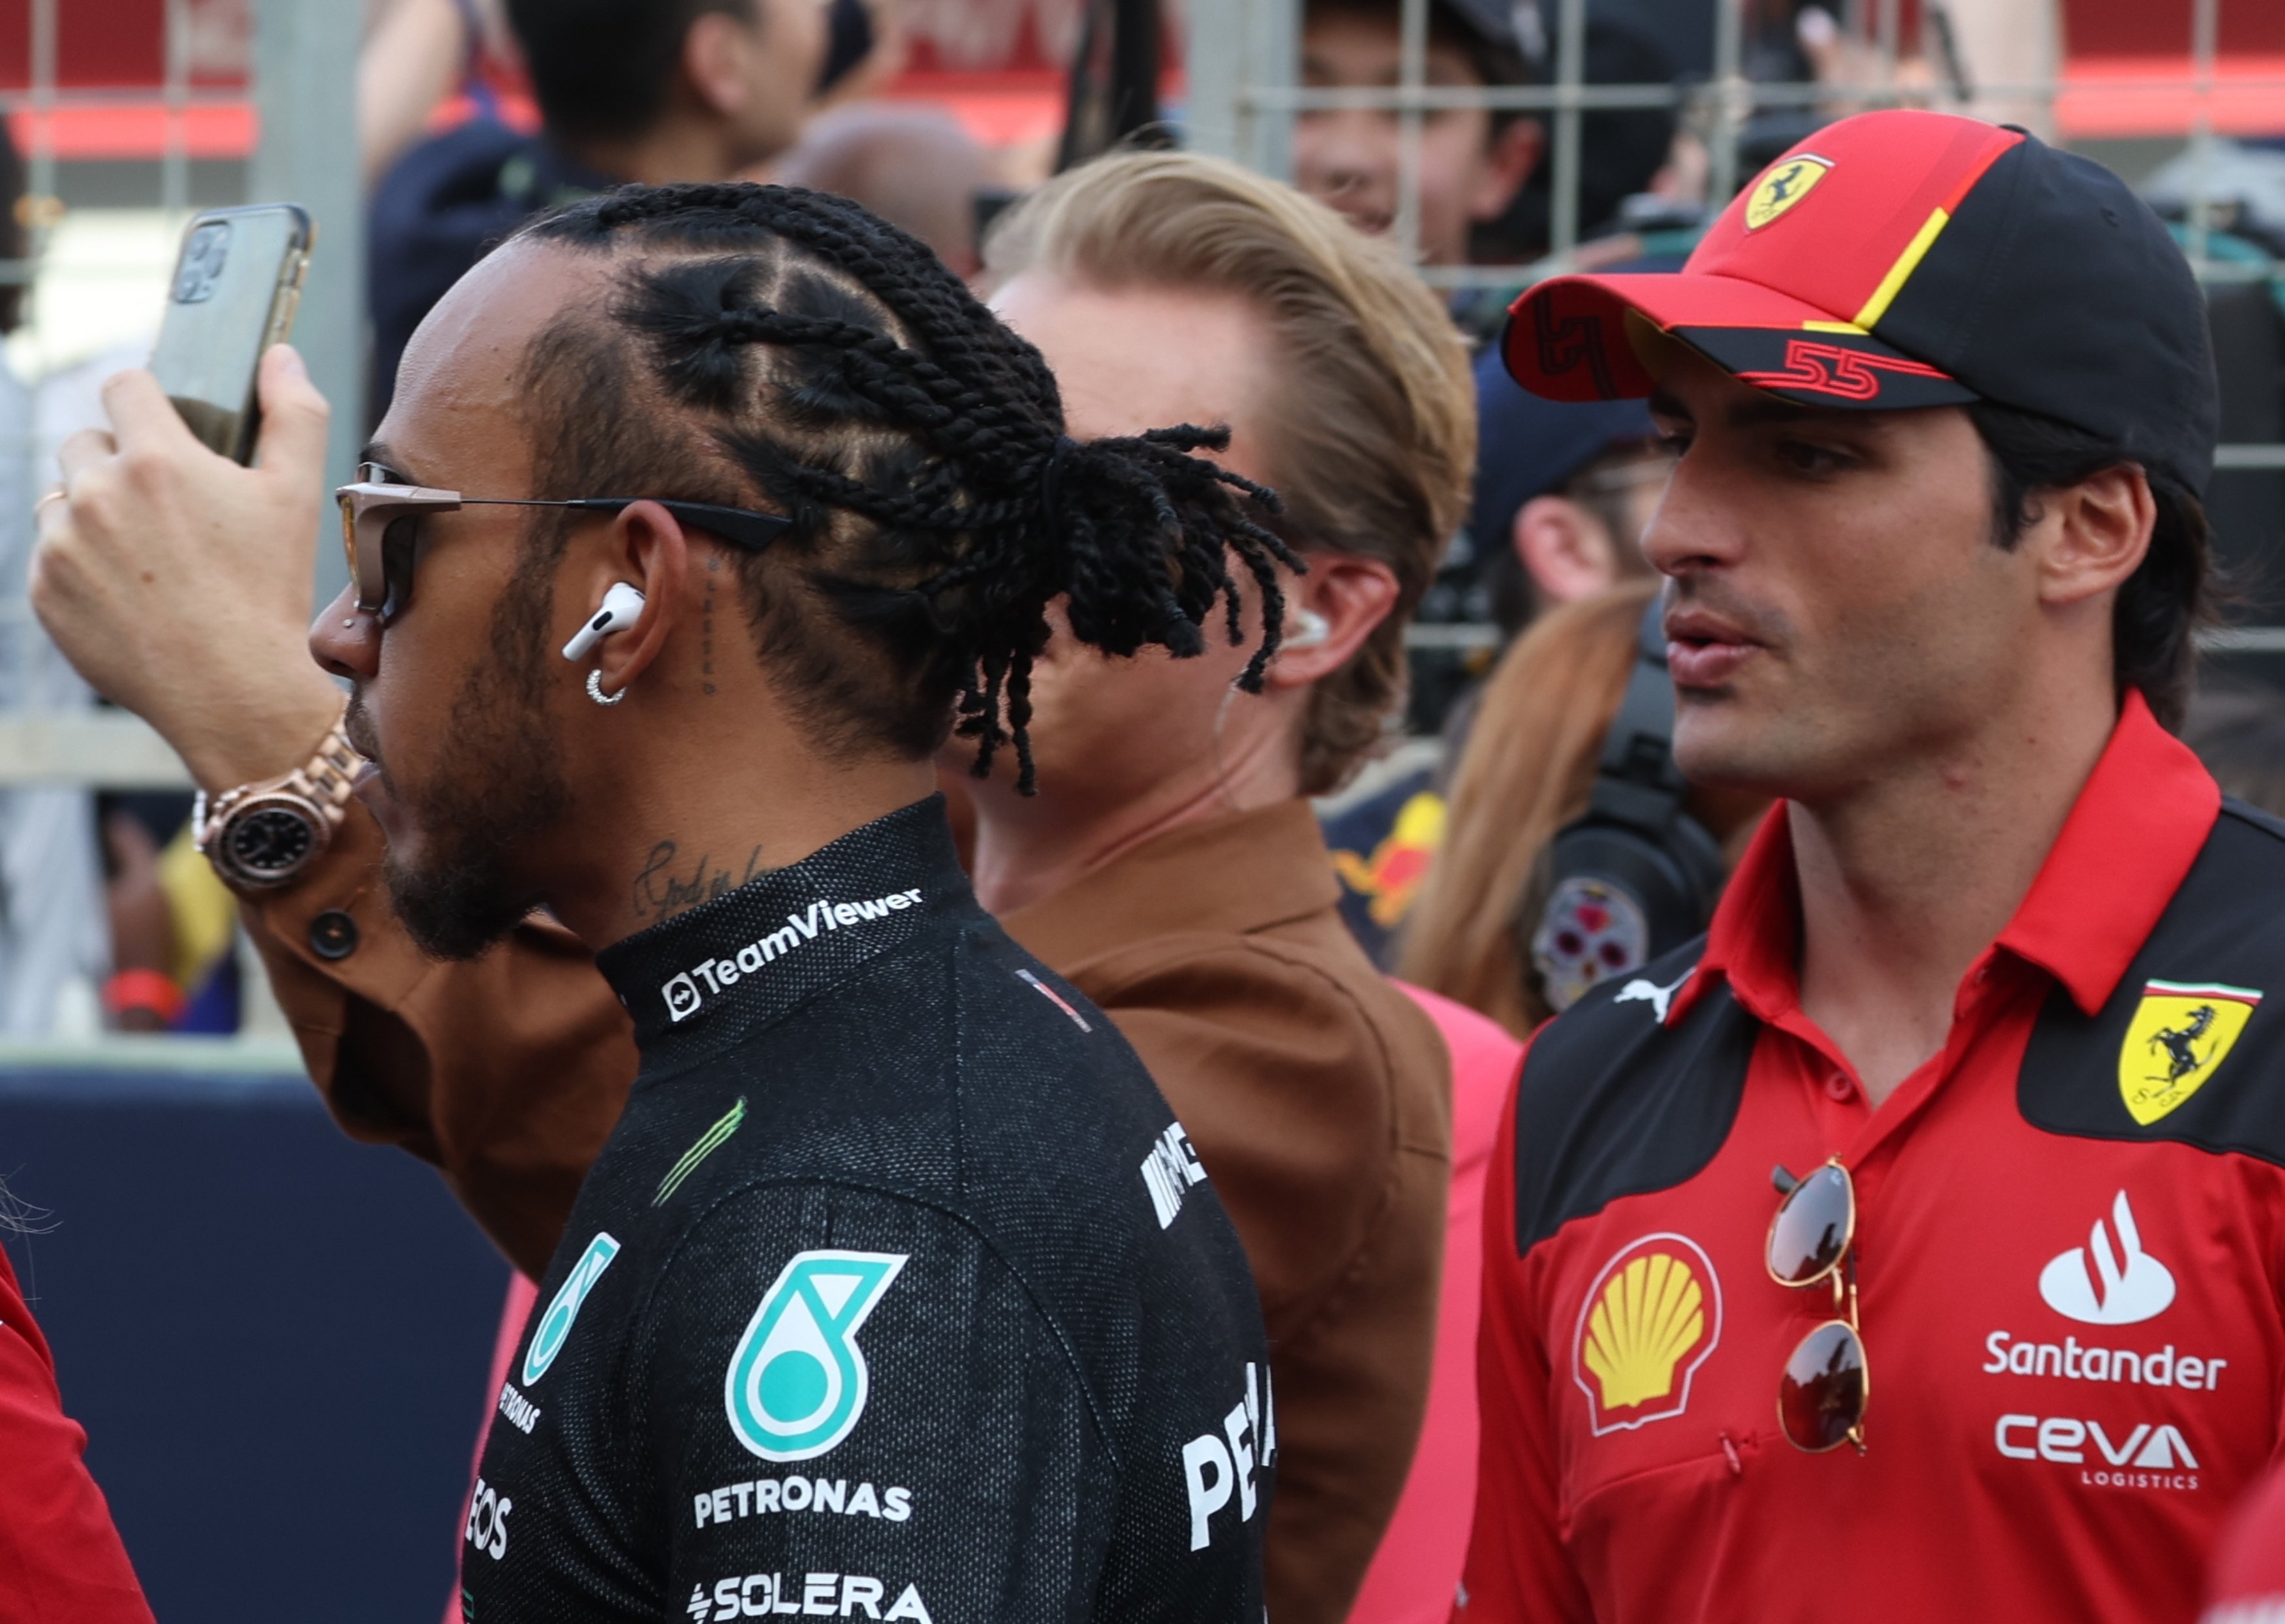 La llegada de Lewis Hamilton a Ferrari mueve a Carlos Sainz a un grande inesperado, primeros contactos